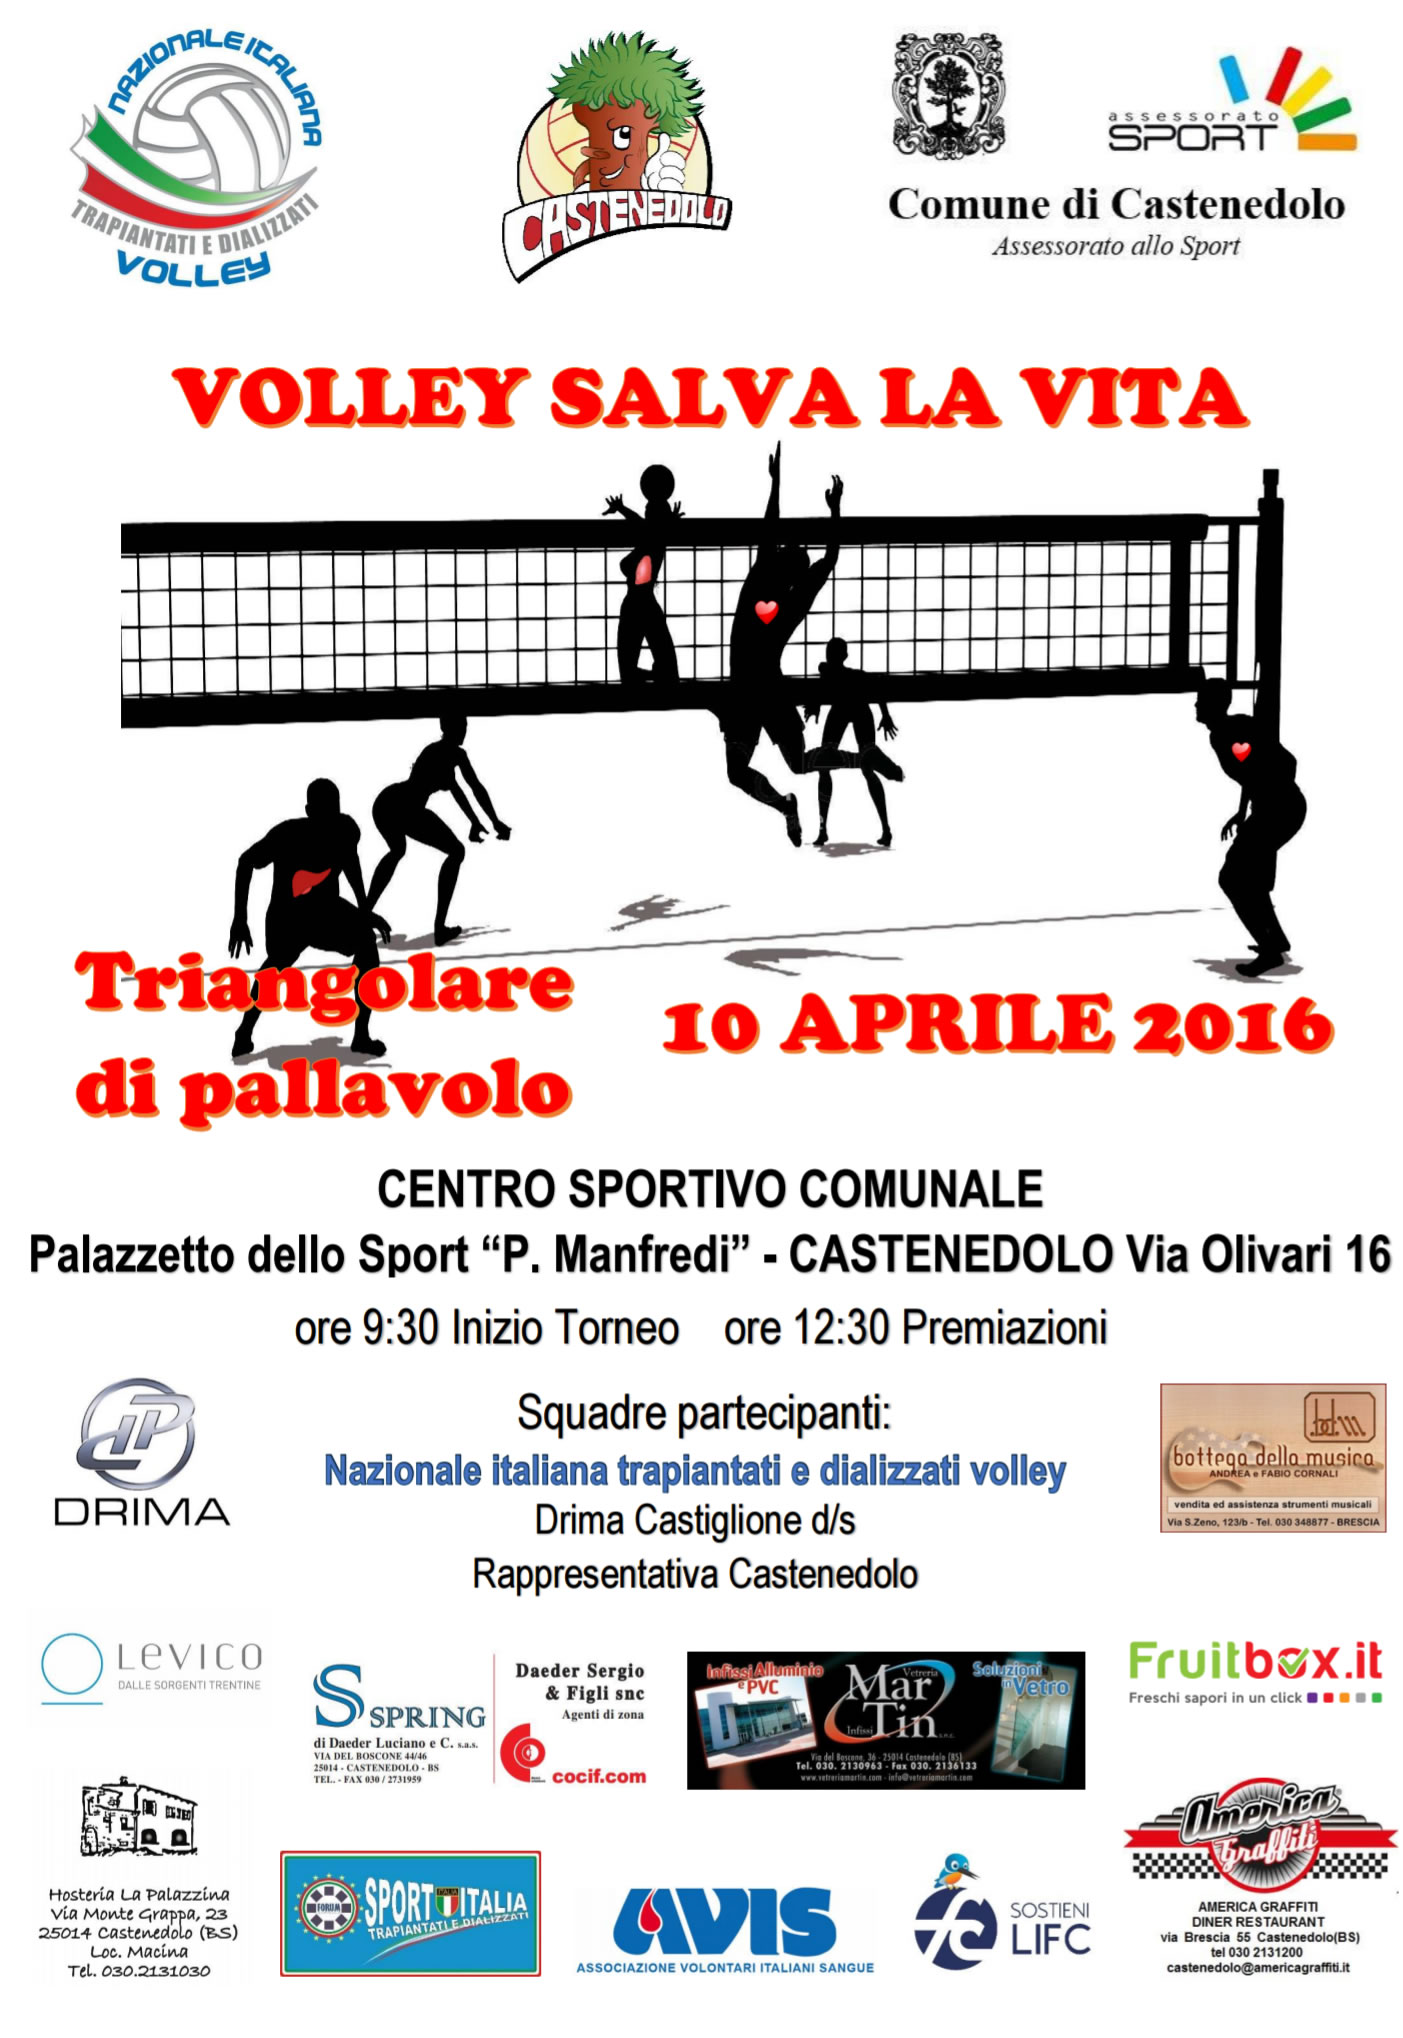 Volley salva la vita: Triangolare di pallavolo, 10 aprile 2016